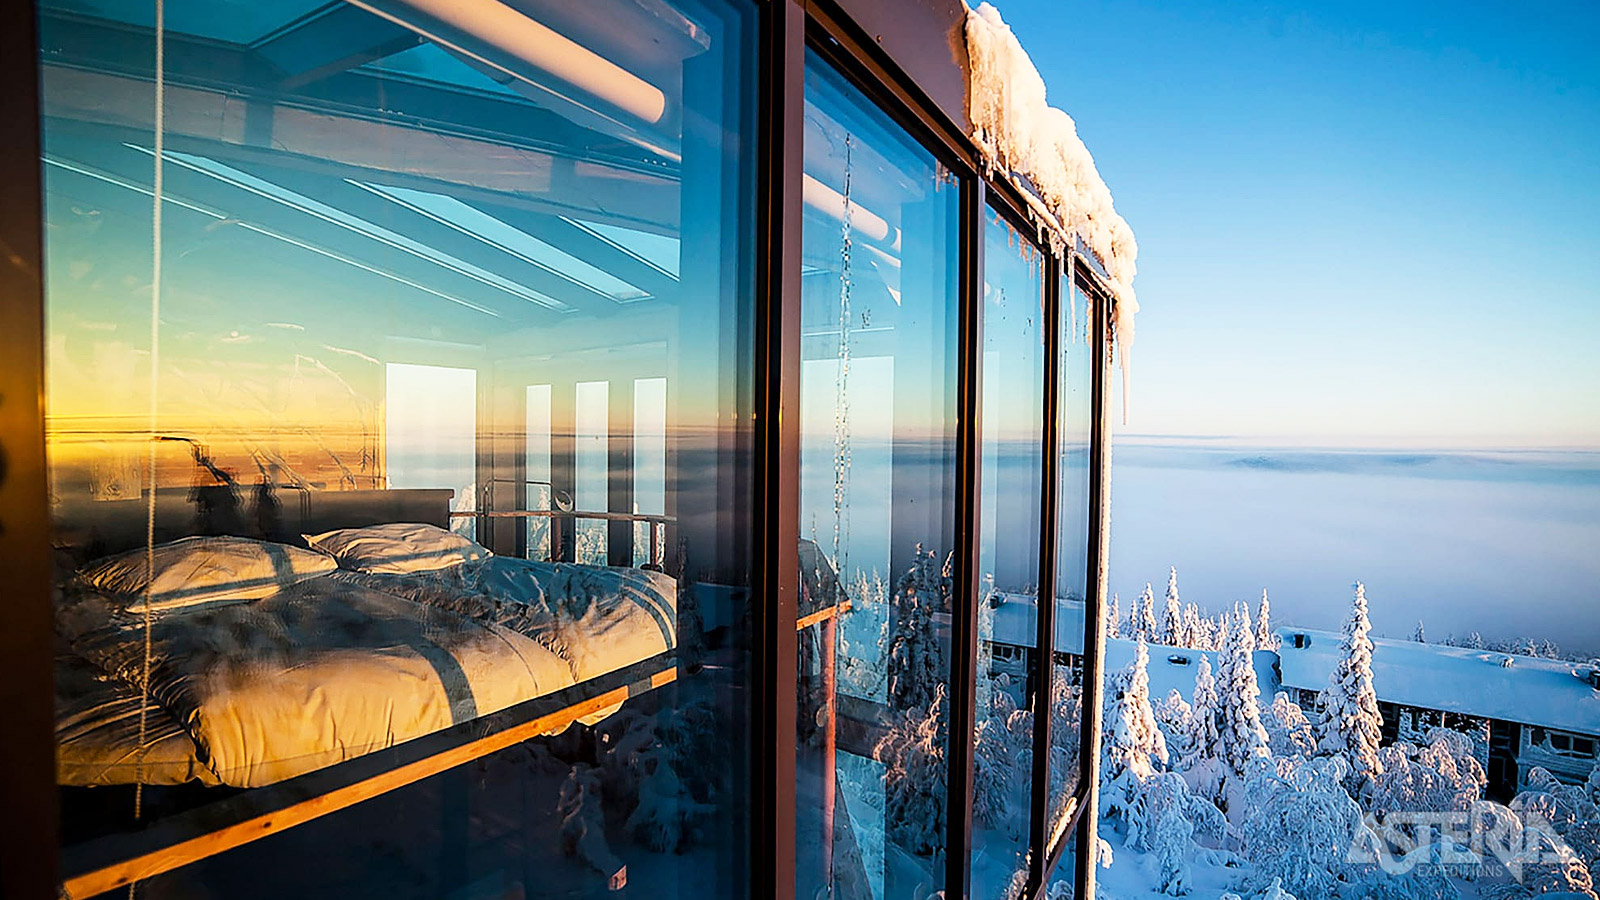 Het grote ramen van een Aurora View Suite bieden een prachtig zicht op de lager gelegen vallei en de noordelijke sterrenhemel